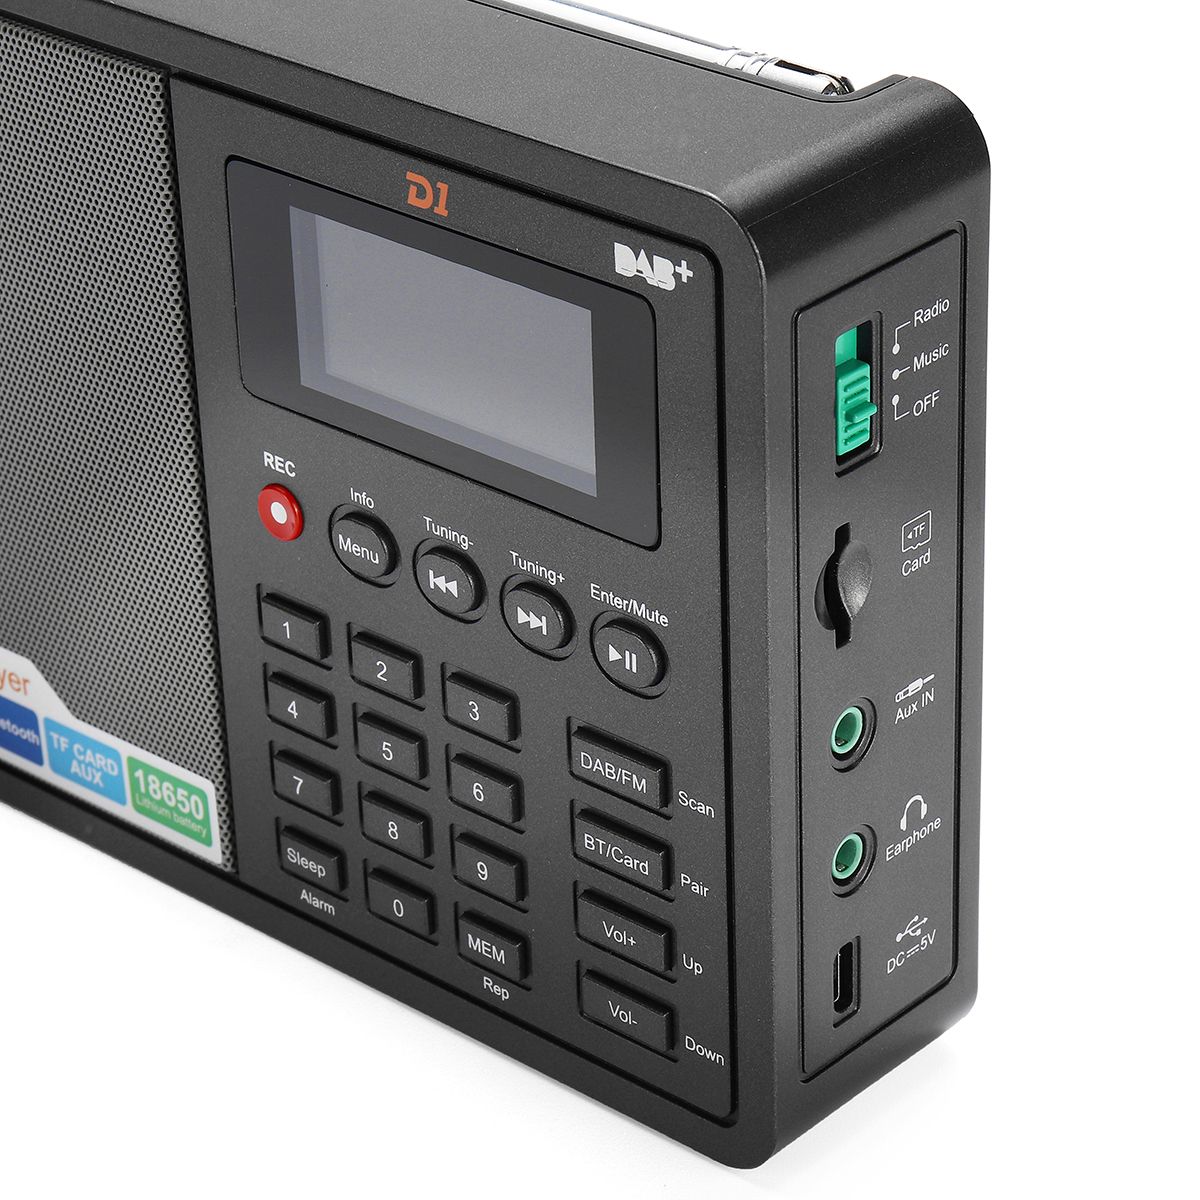 GTMEDIA-D1-DAB-Receiver-Portable-Digital-DAB-FM-Full-Band-Stereo-Radio-1647019